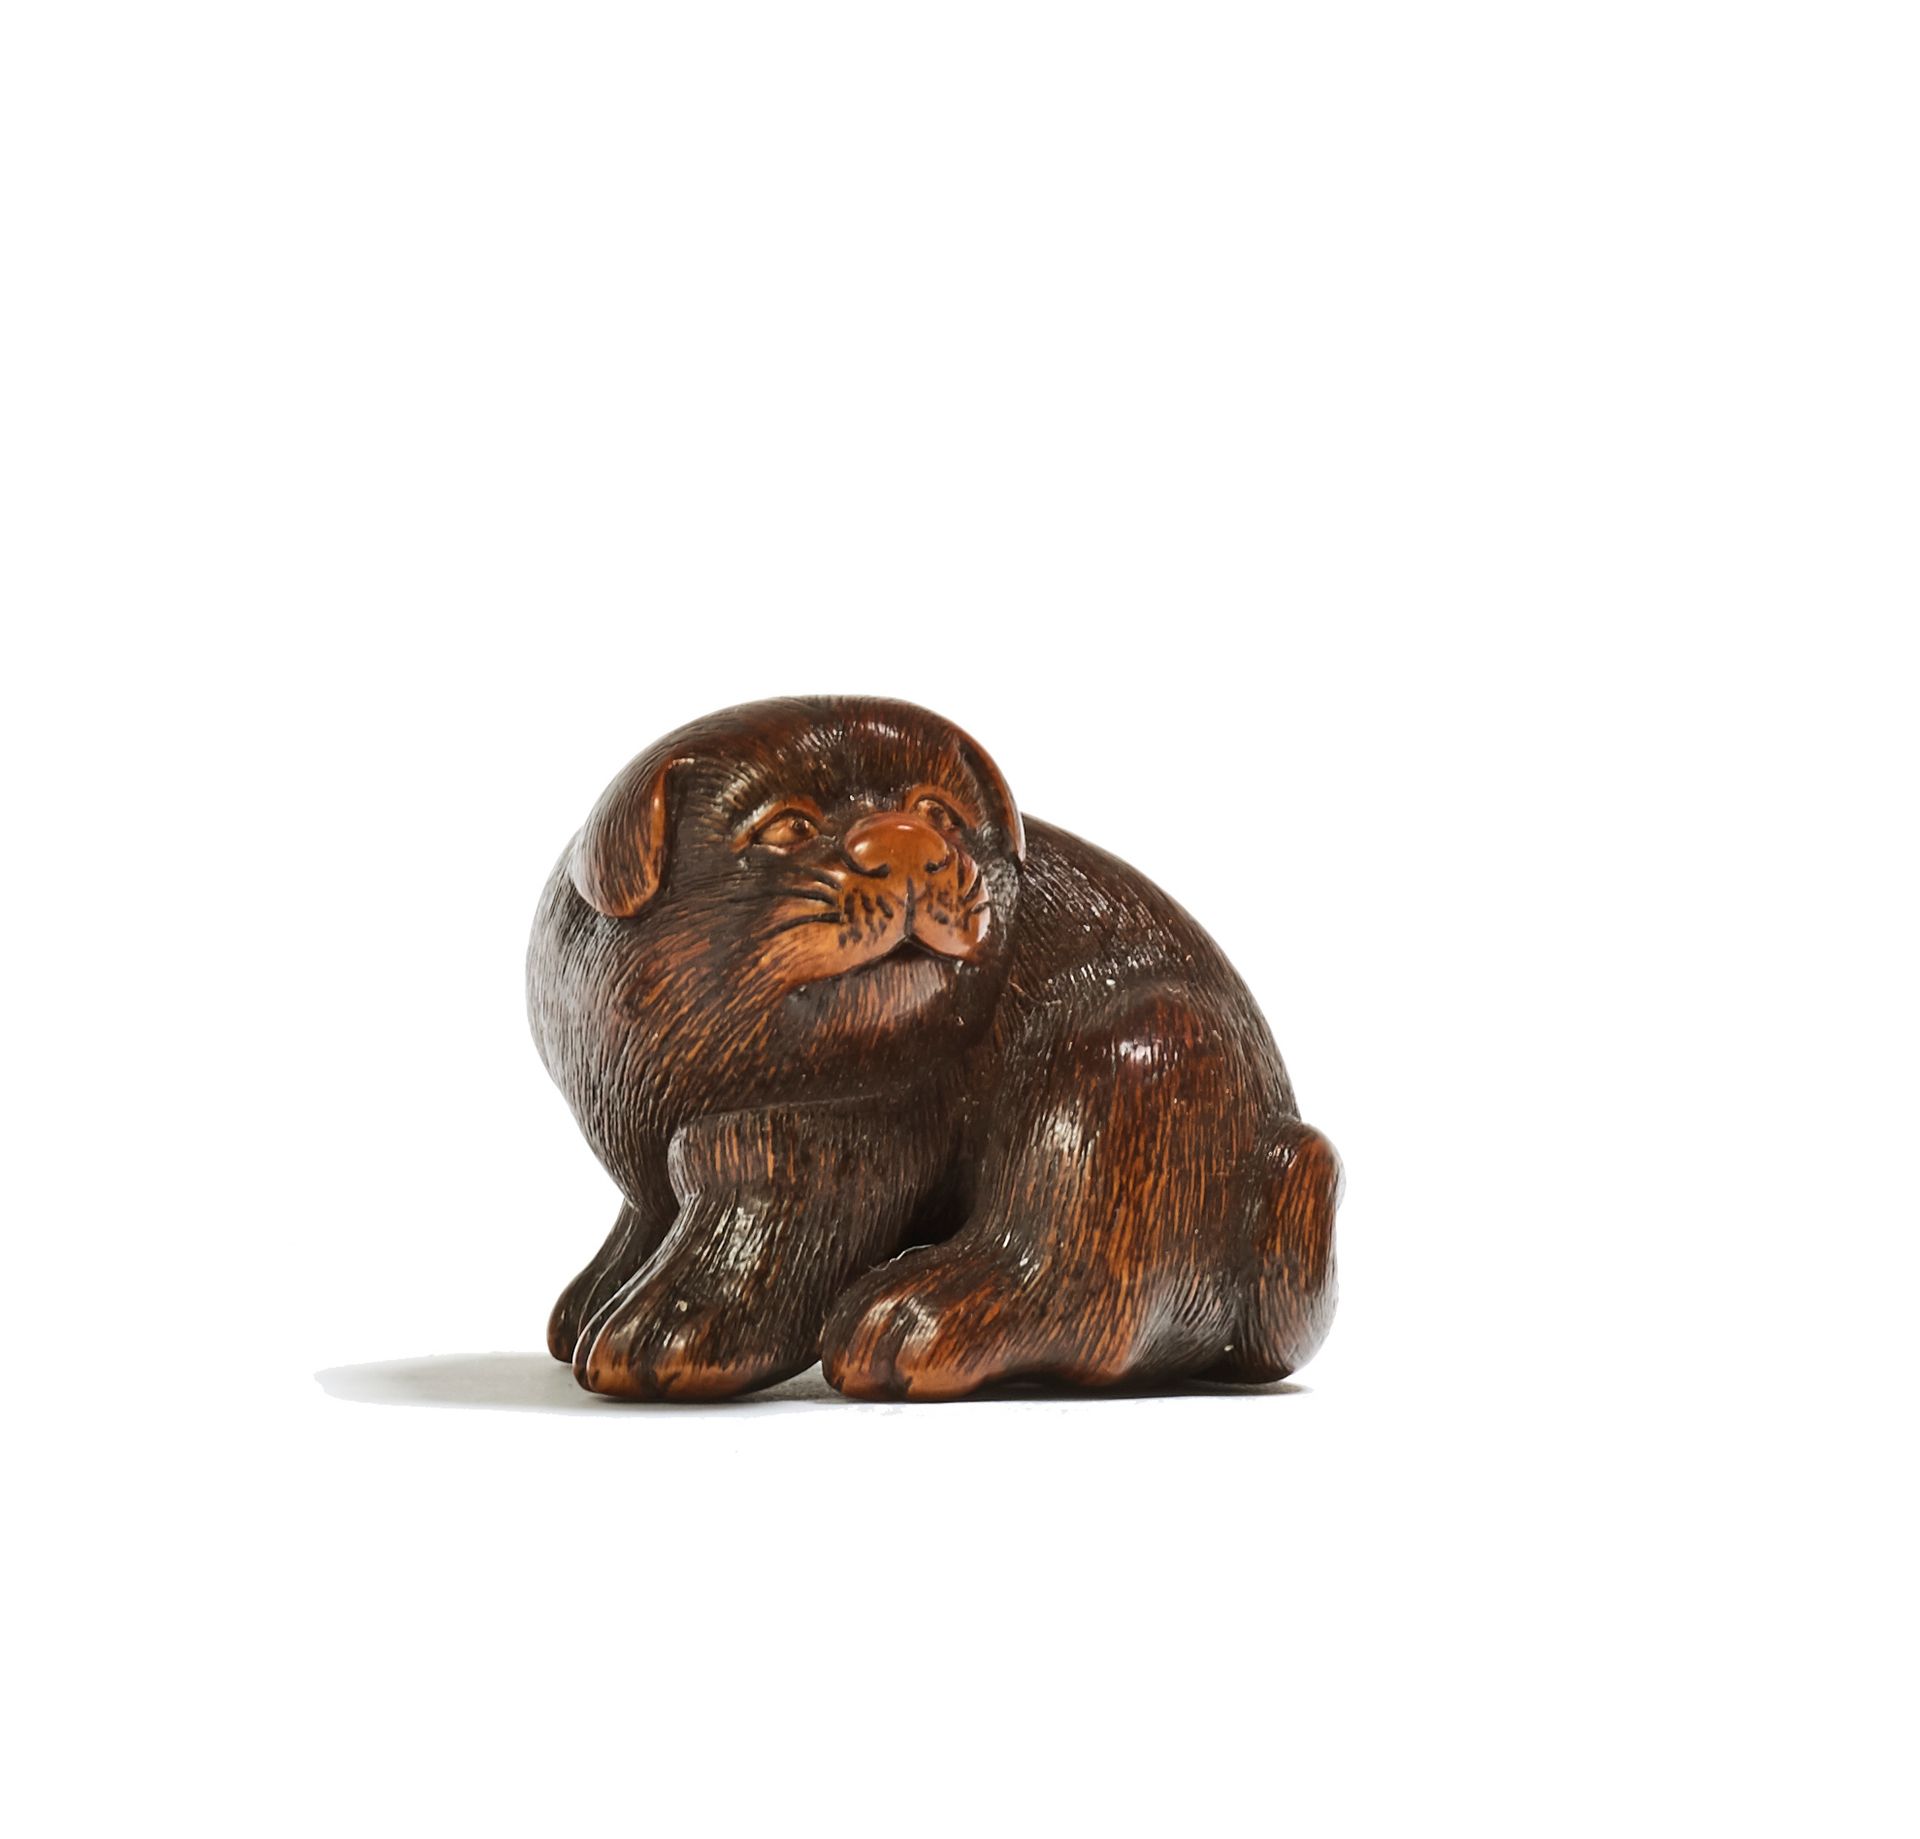 JAPON - XIXE SIÈCLE Netsuke in legno, cucciolo con orecchie flosce, seduto che g&hellip;